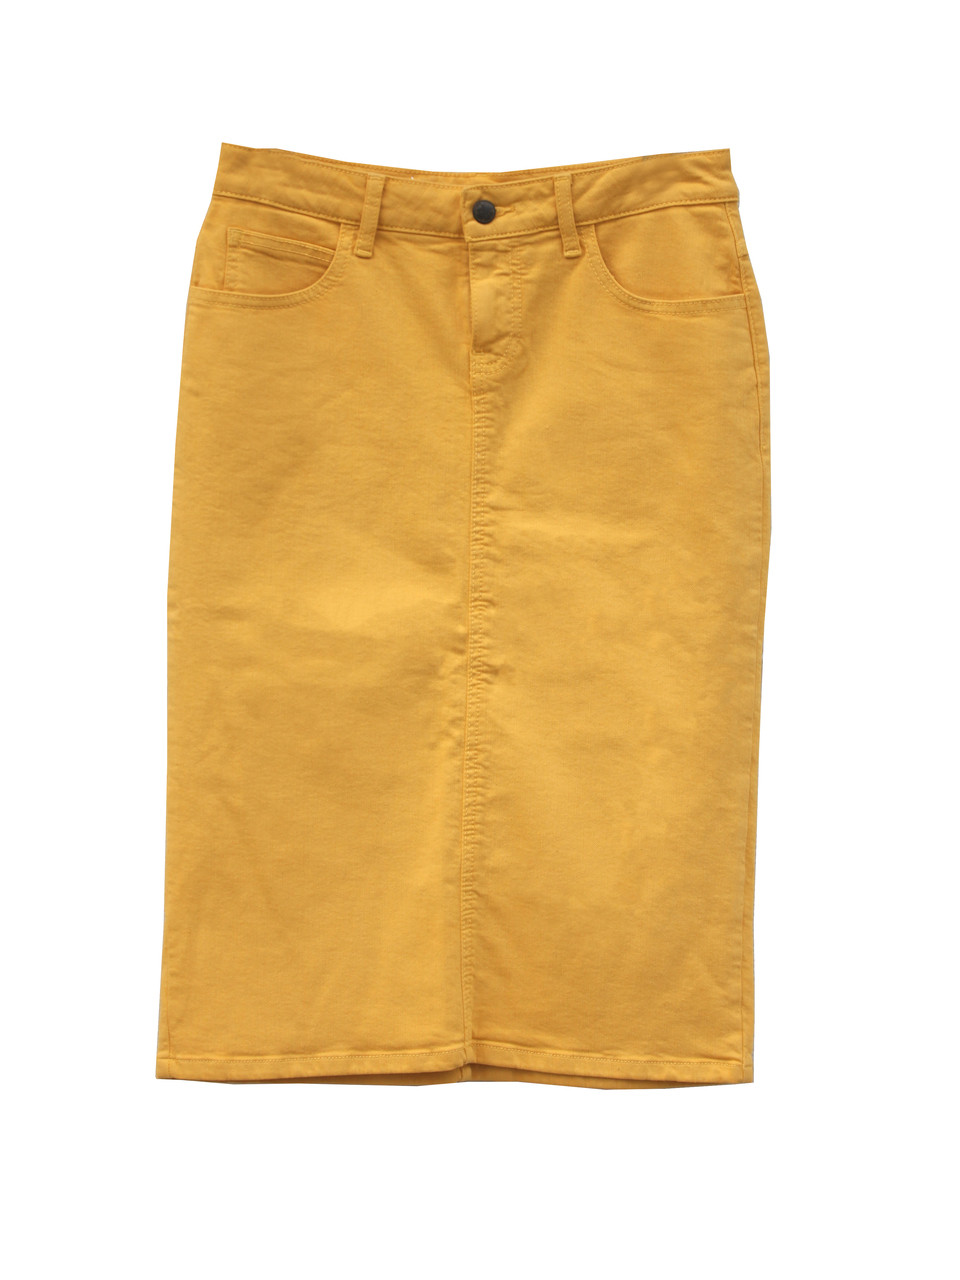 denim skirt yellow